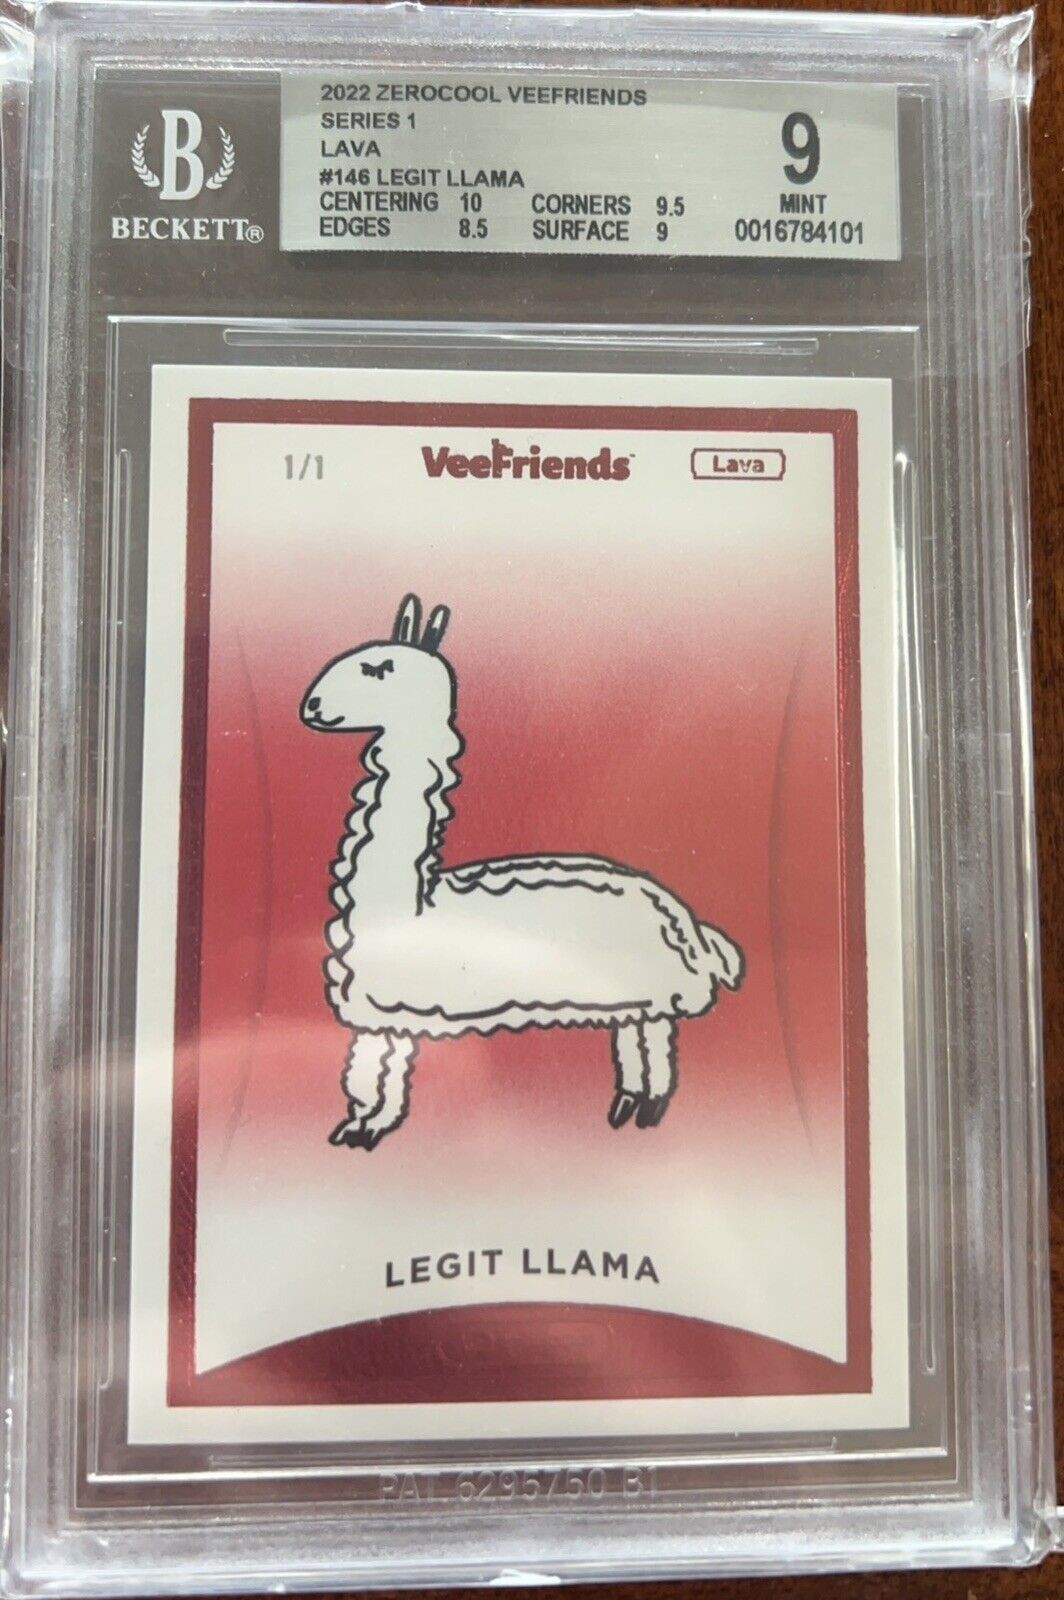 VEEFRIENDS Series 1 Legit Llama 1/1 Lava BGS 9